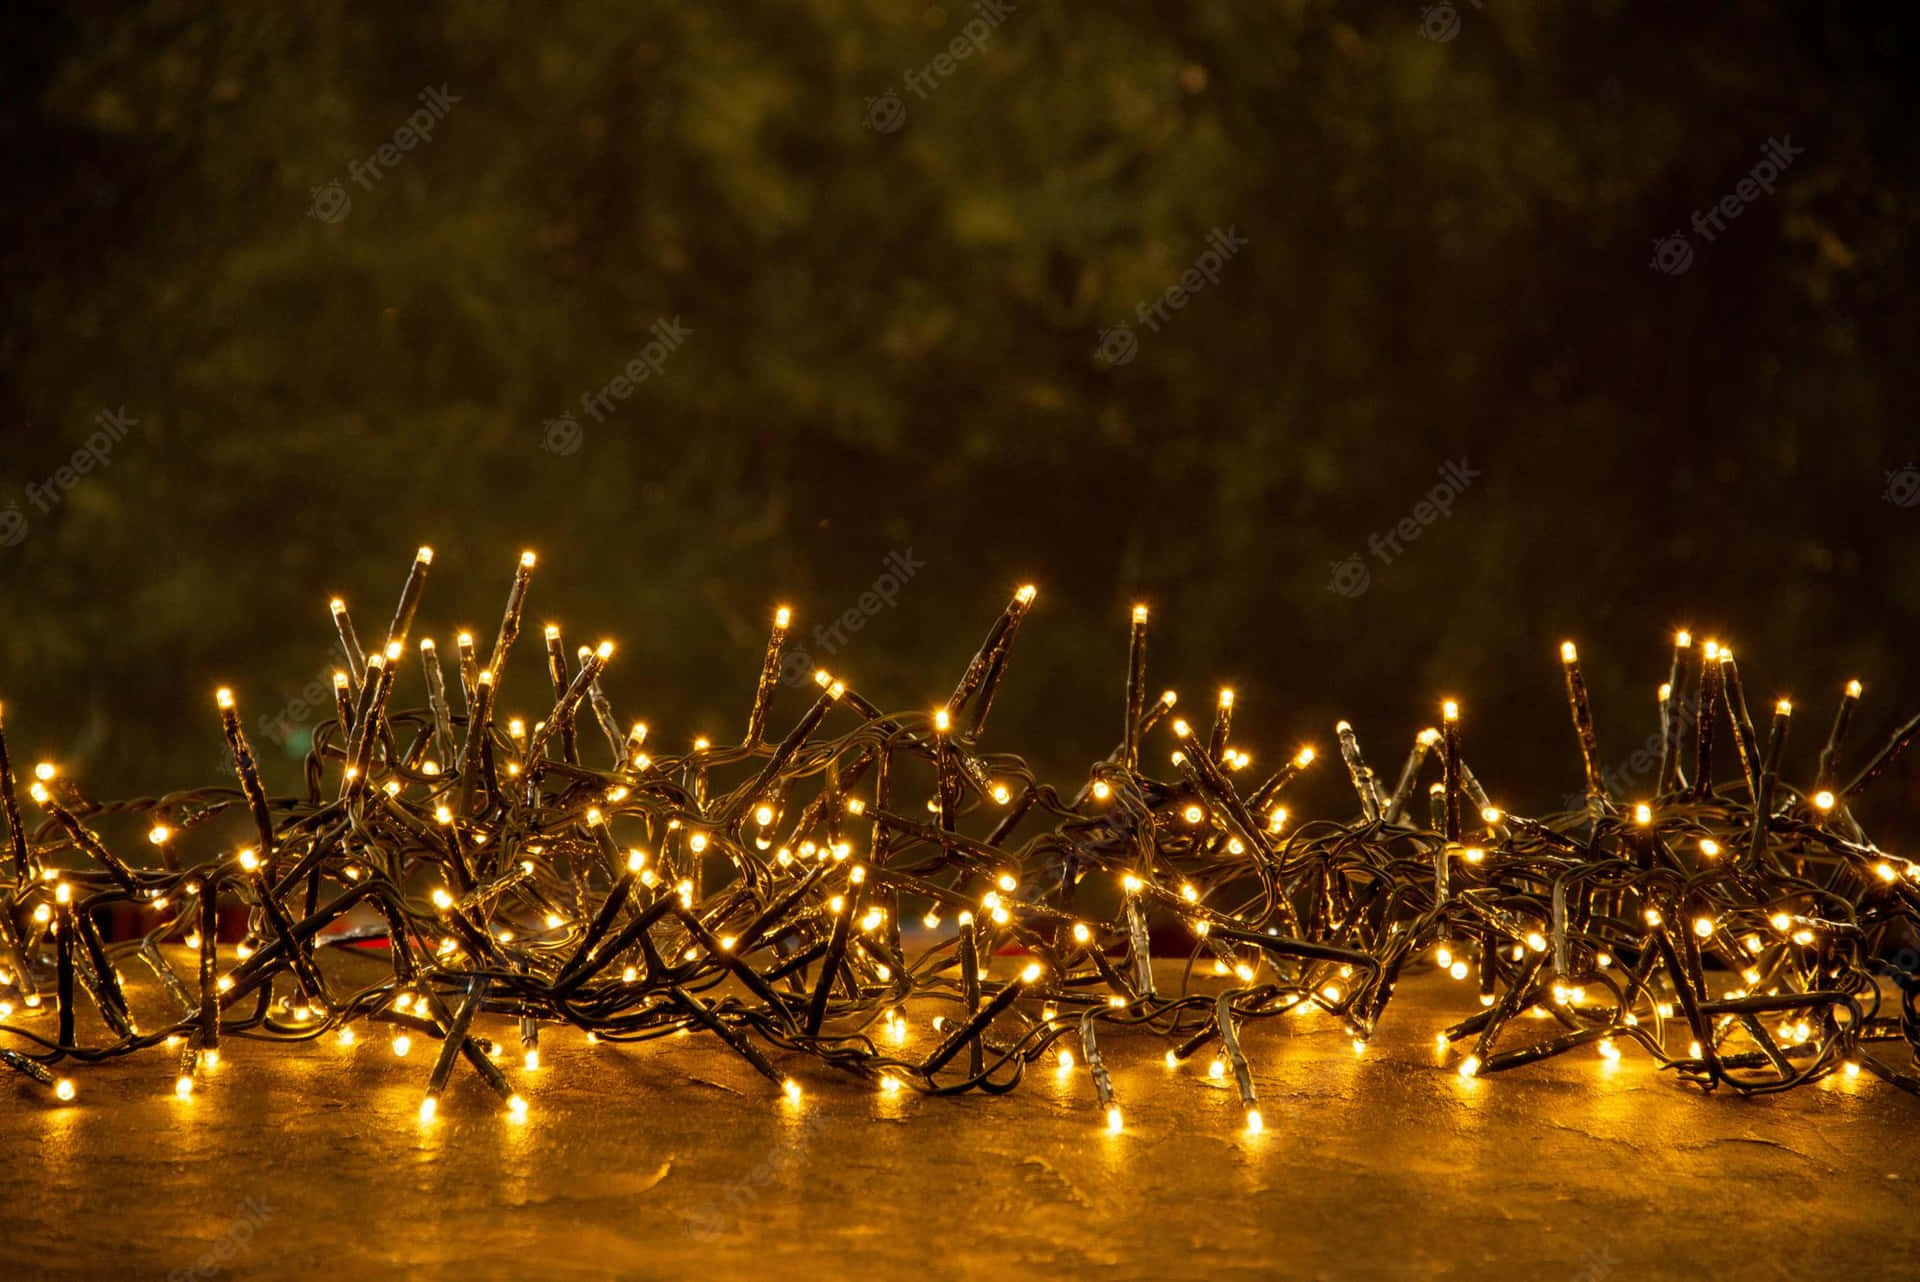 Dêum Passeio Sob O Brilho Encantador Dessas Luzes De Natal. Papel de Parede